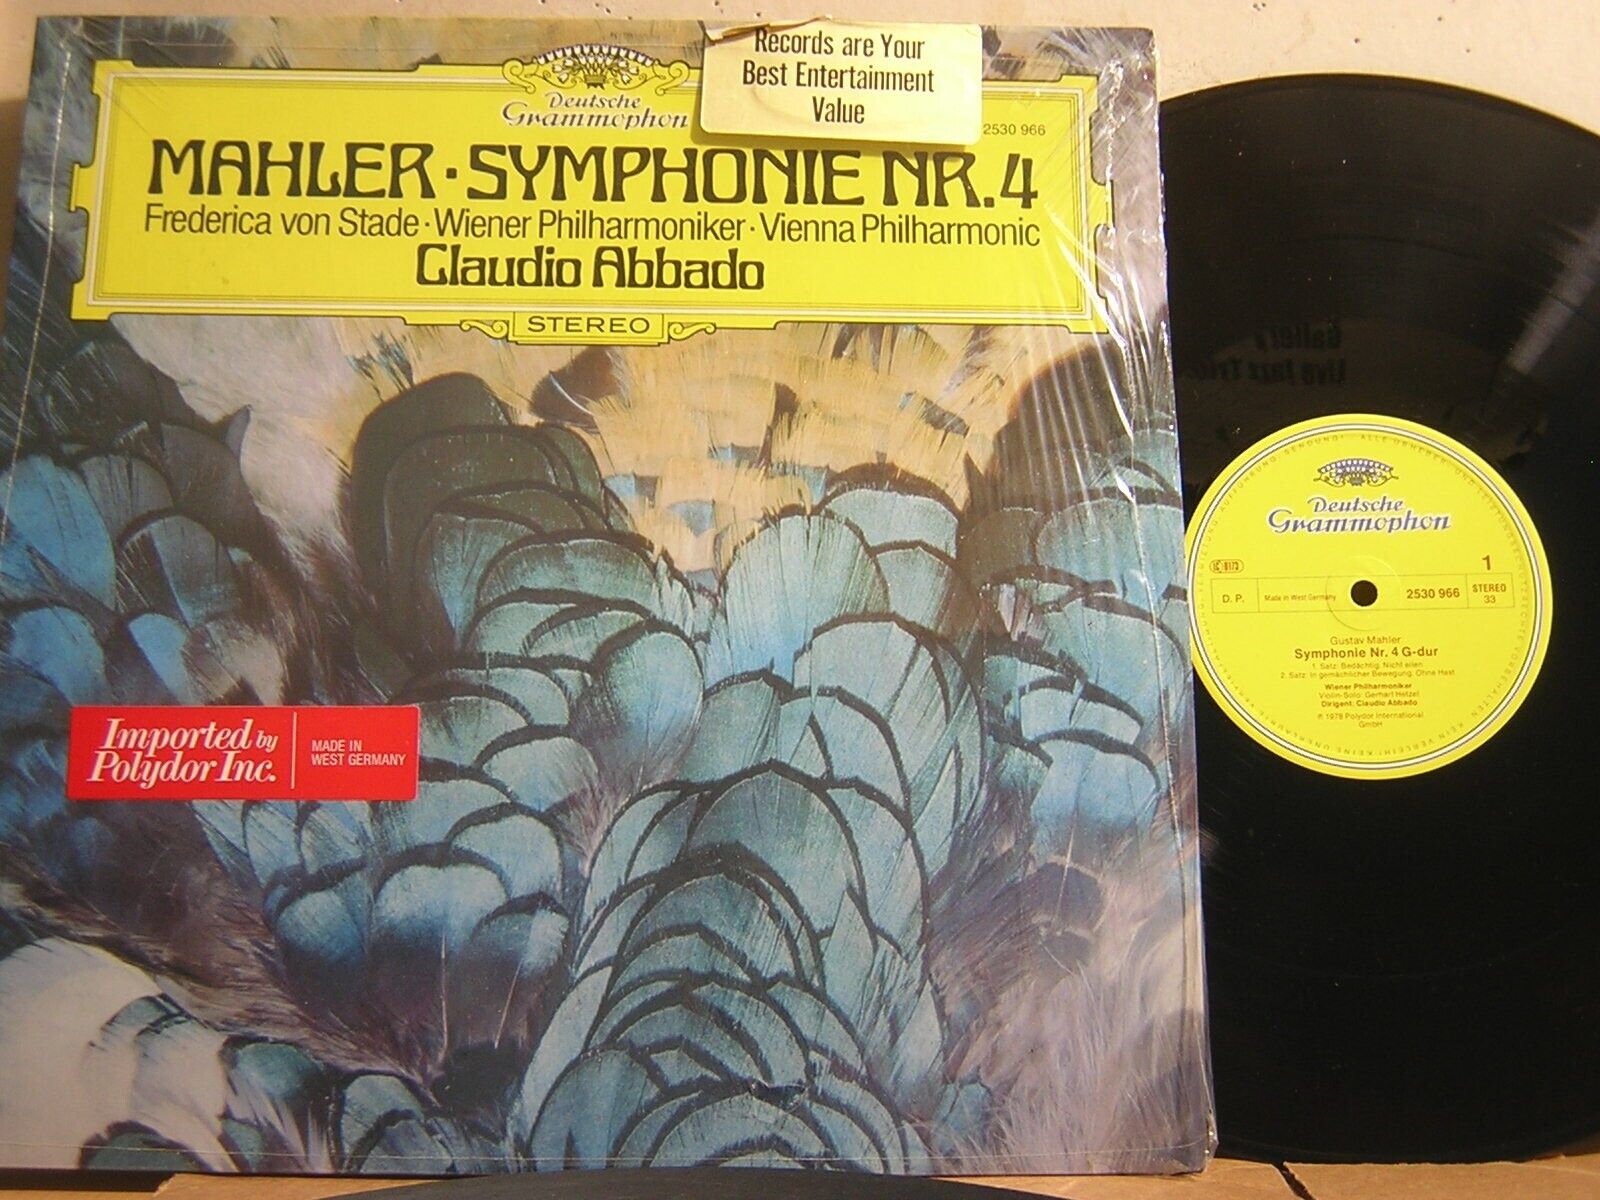 DG 2530 966 Mahler Symphony No.4 Abbado VPO Germany 1978 NM